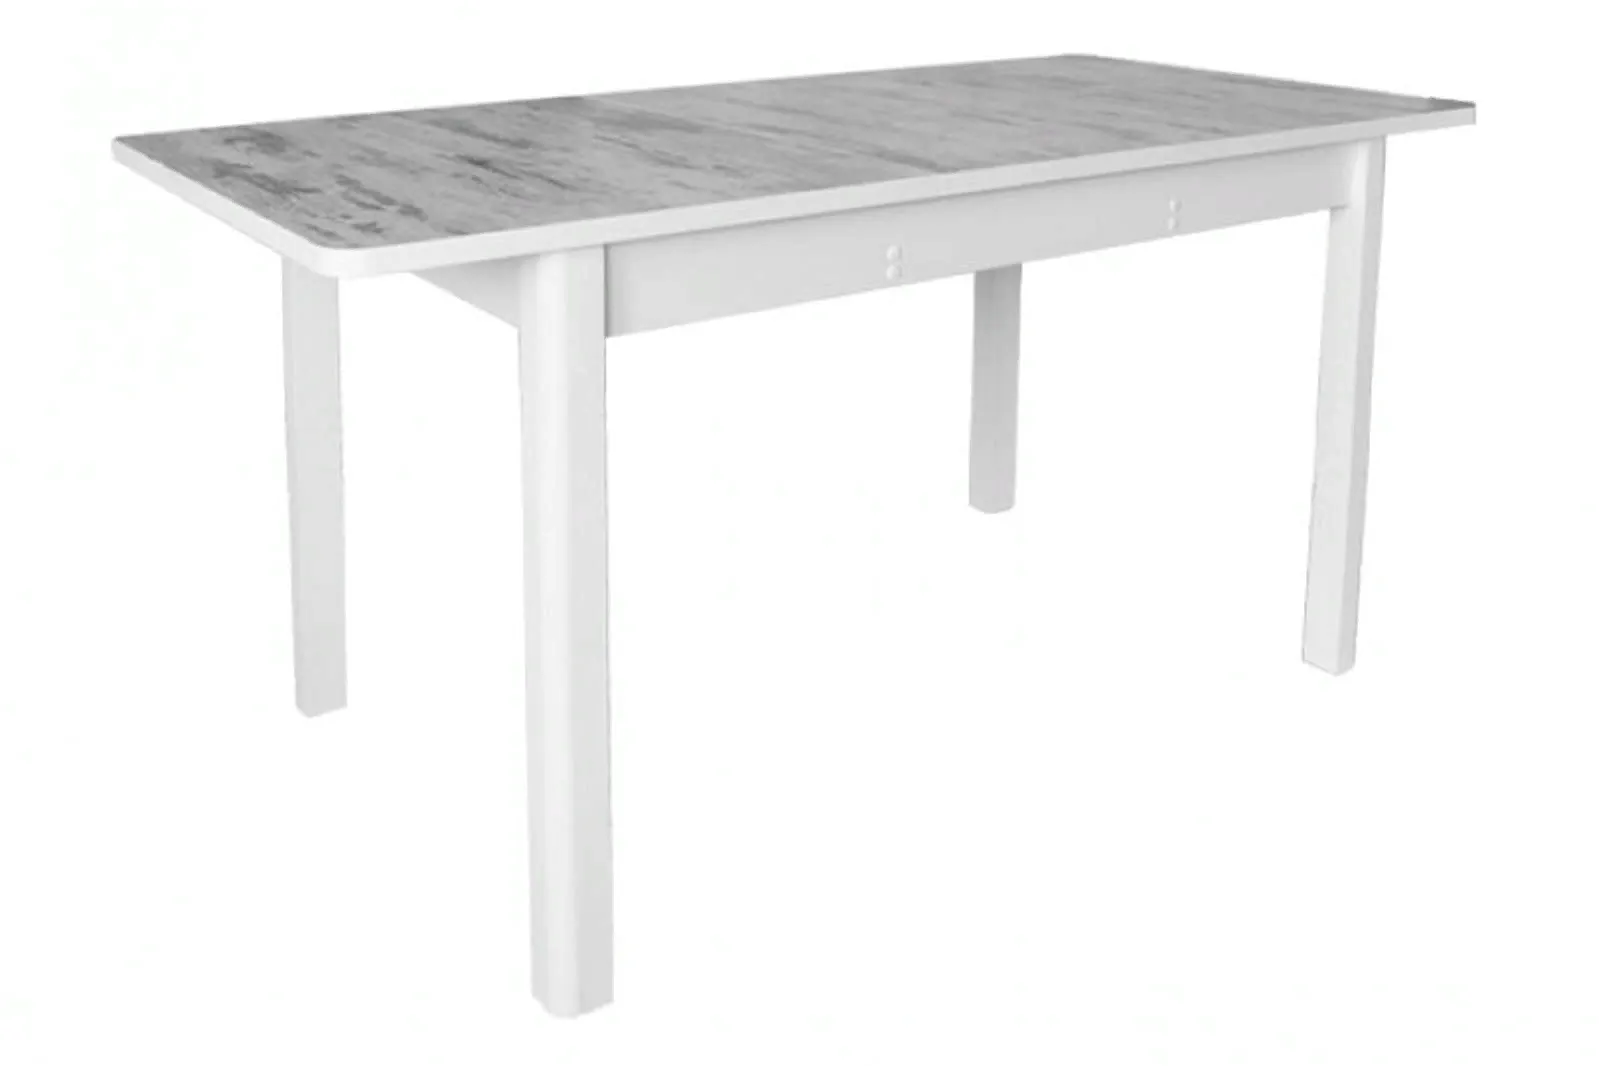 ПРЕСТИЖ-2 стол раскладной 120/152 см (серый)